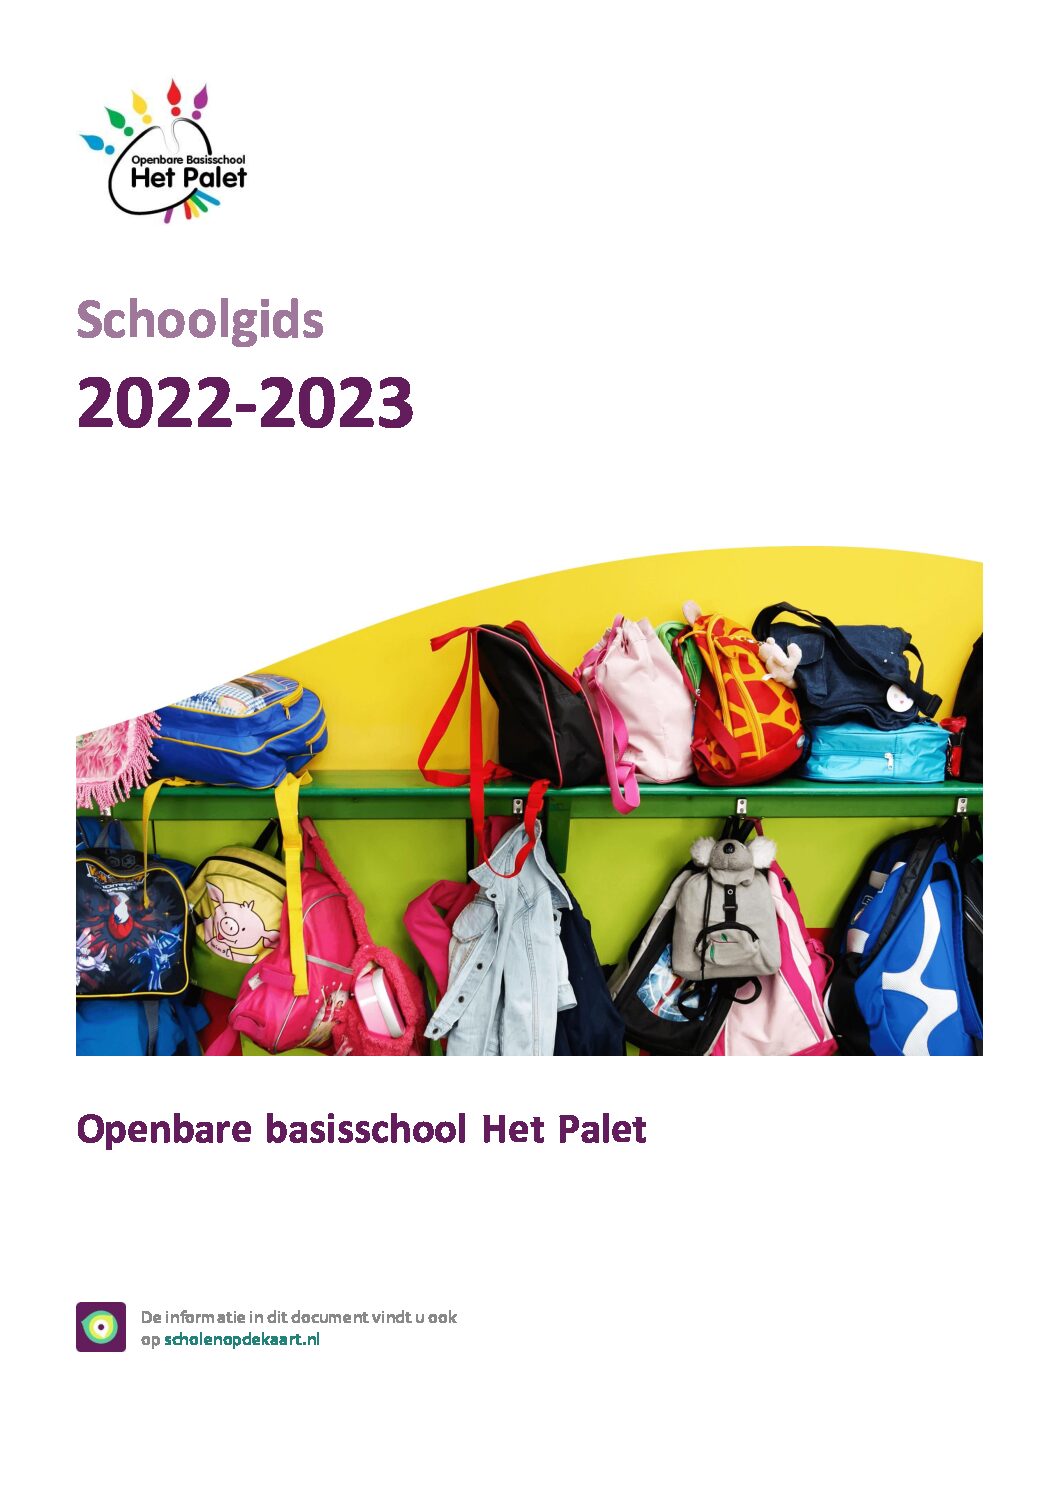 Featured image for “Schoolgids 2022-2023”